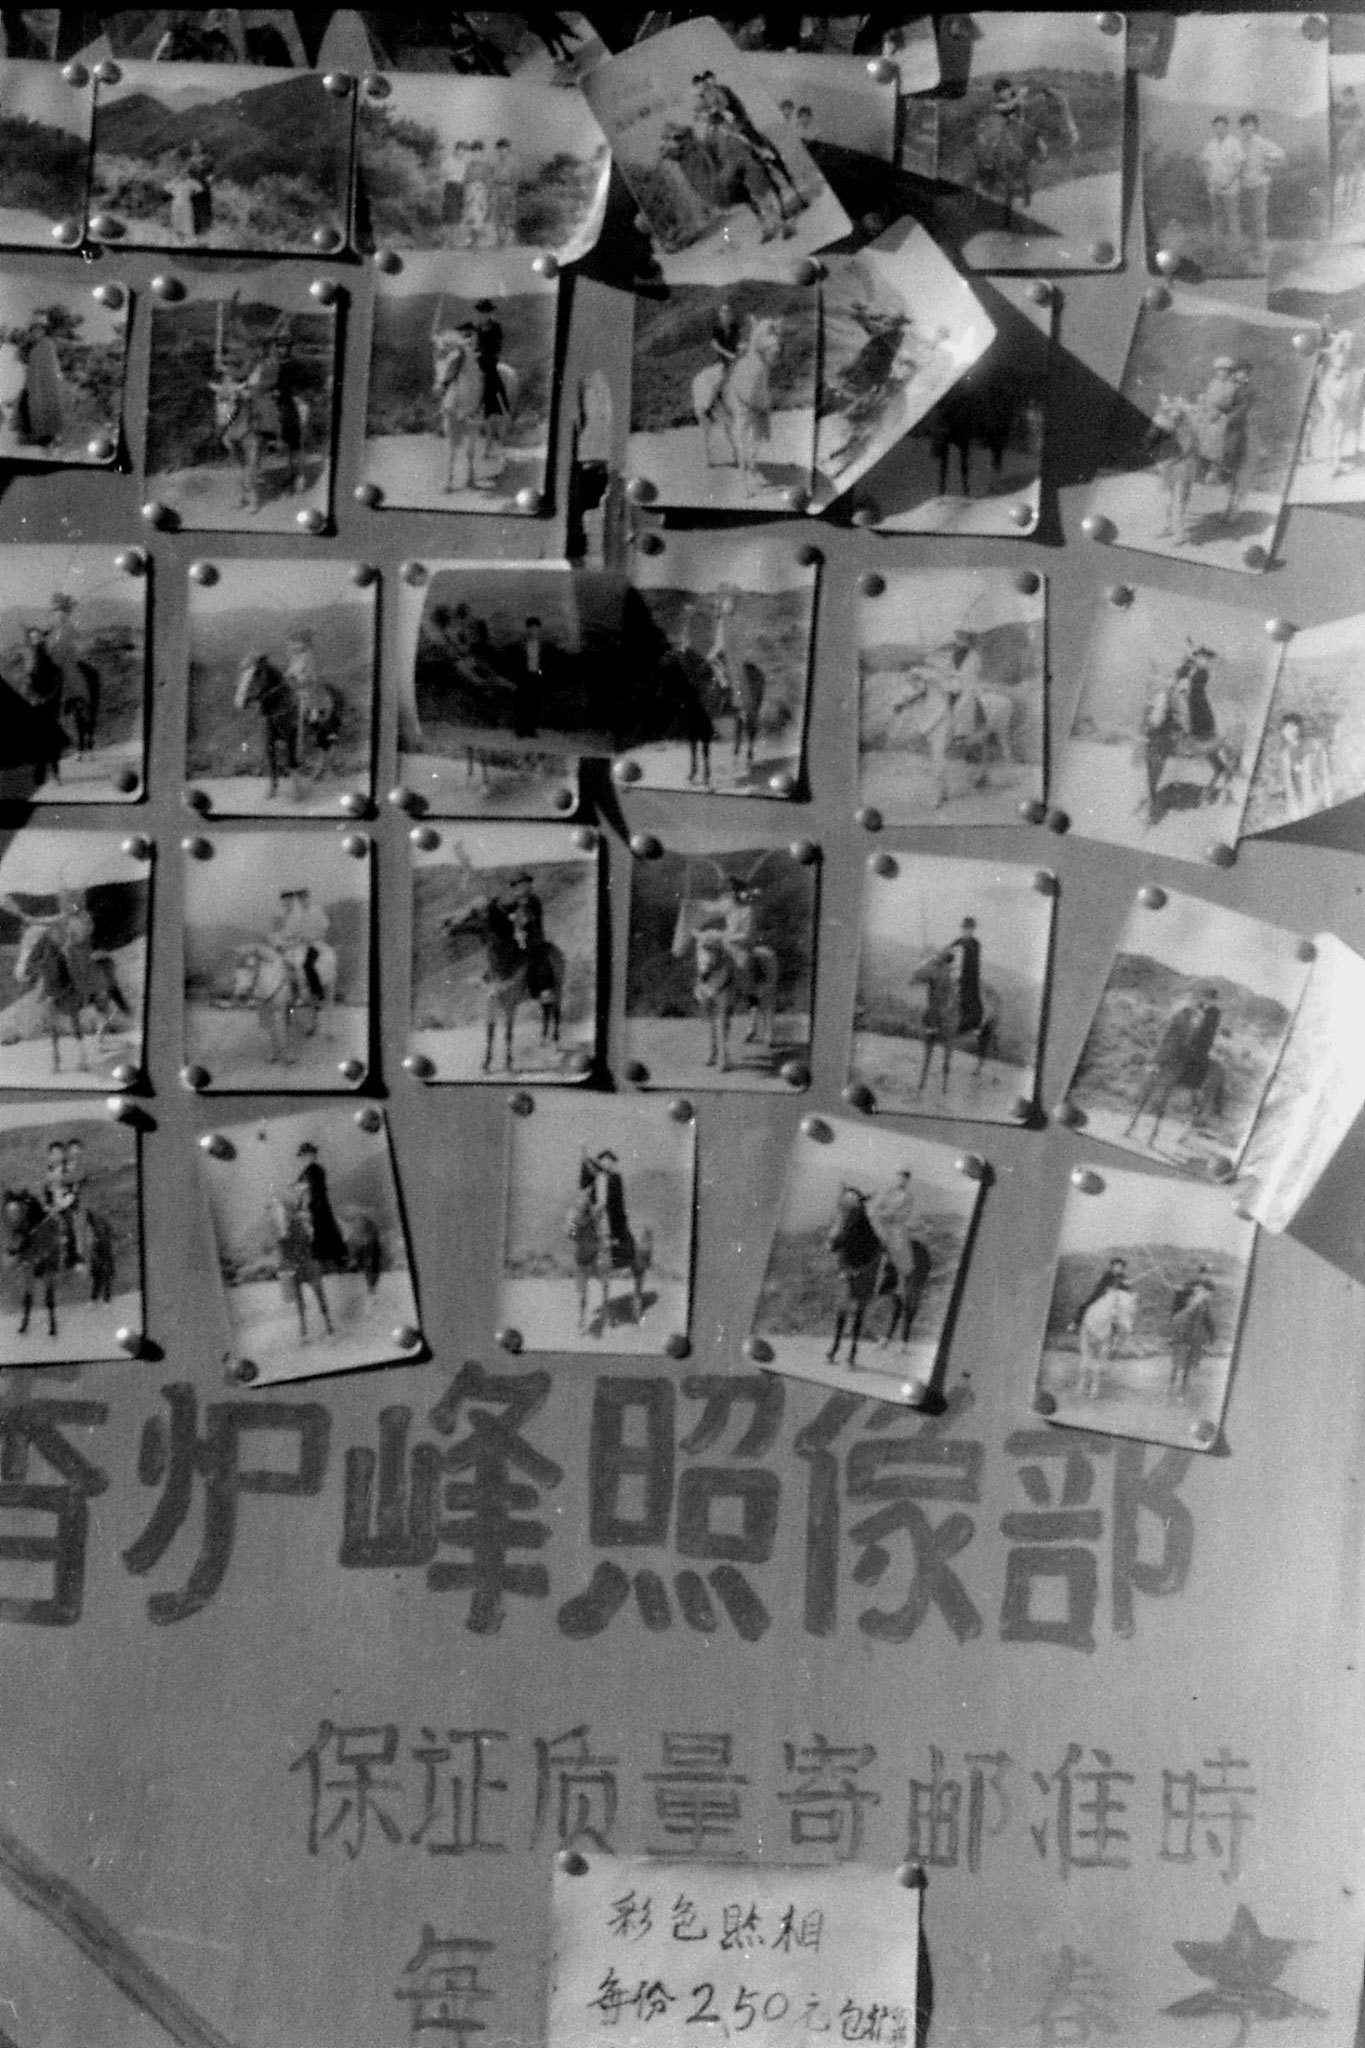 6/11/1988: 9: Day trip to Jiangshan Park and Incense Burner Peak